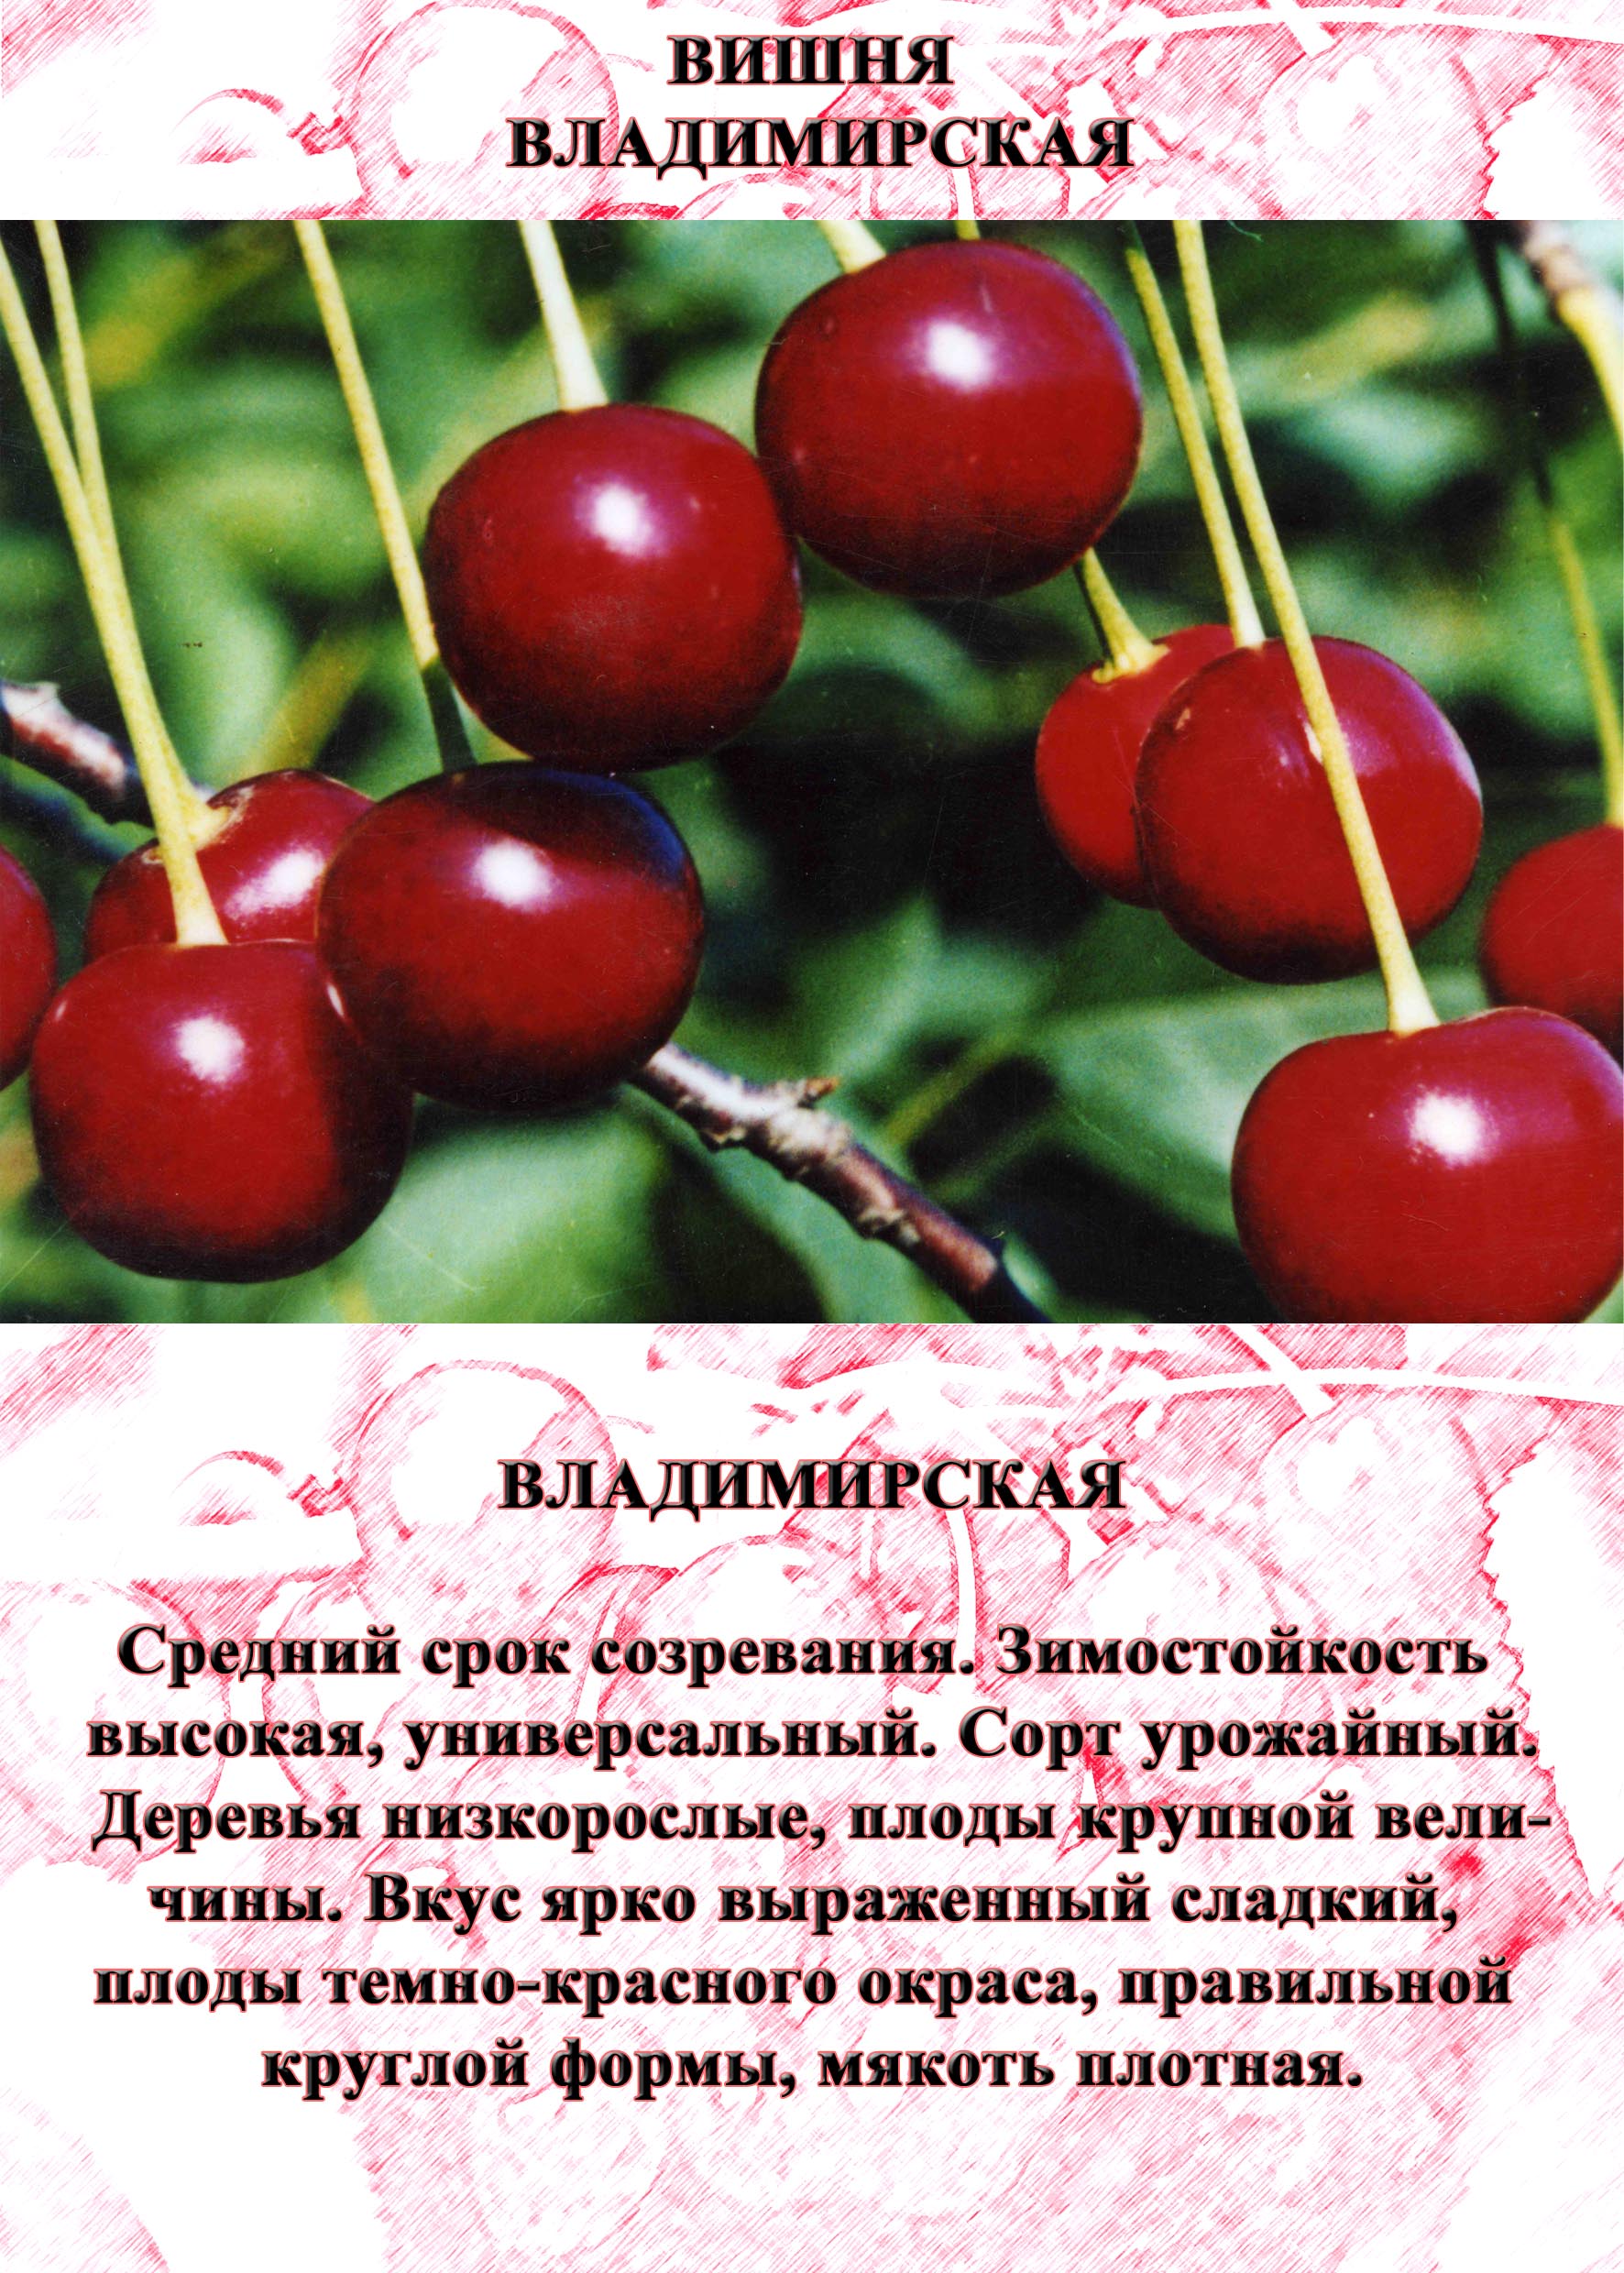 Сорта вишни владимирская с фото и описанием